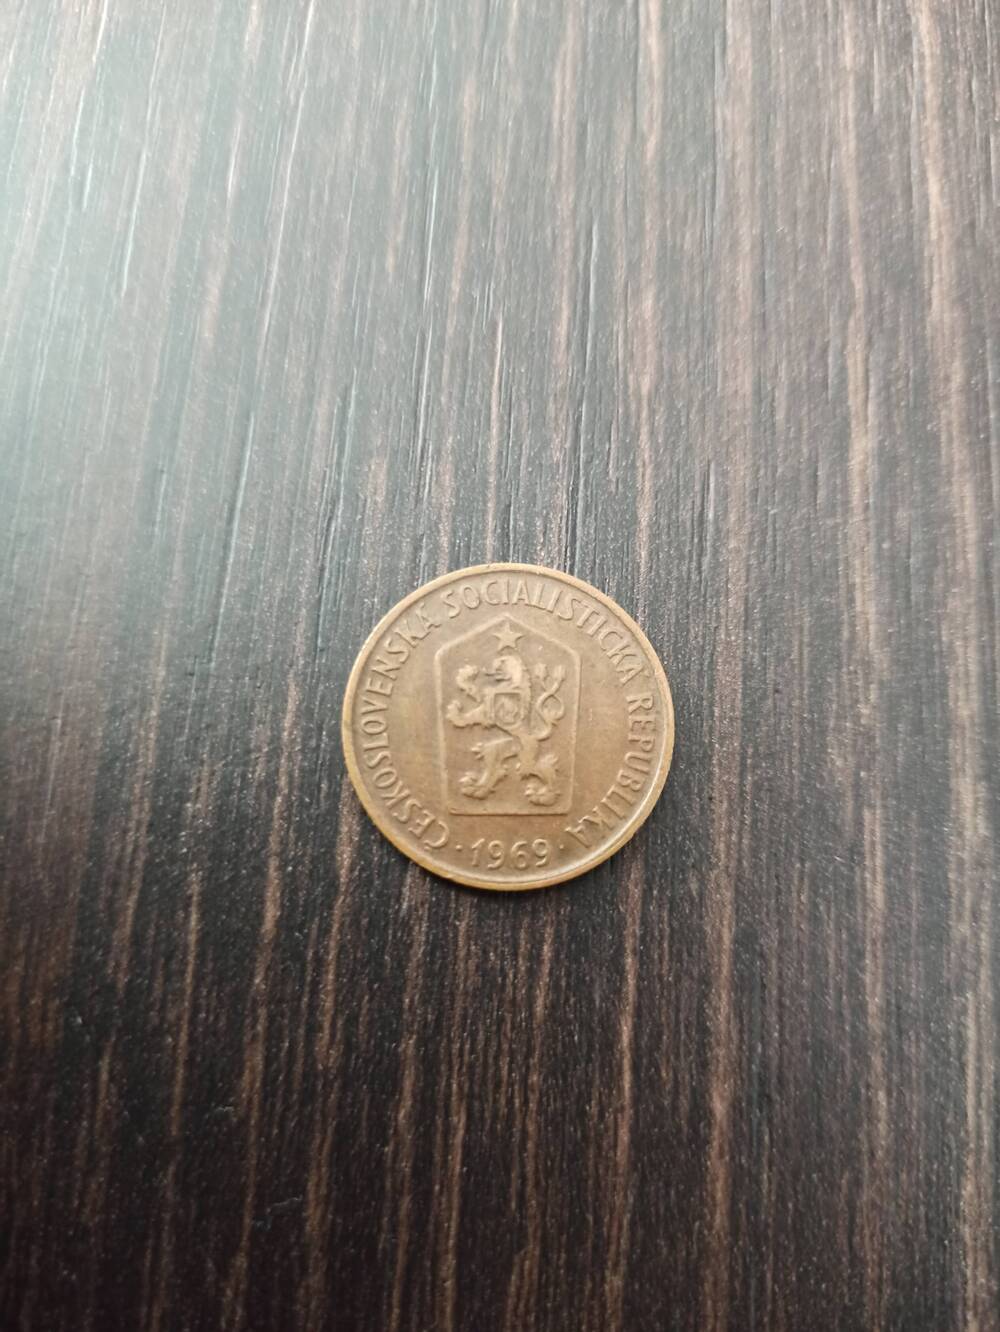 Нумизматика. Монета  Чехии достоинством 50 h 1969 года.